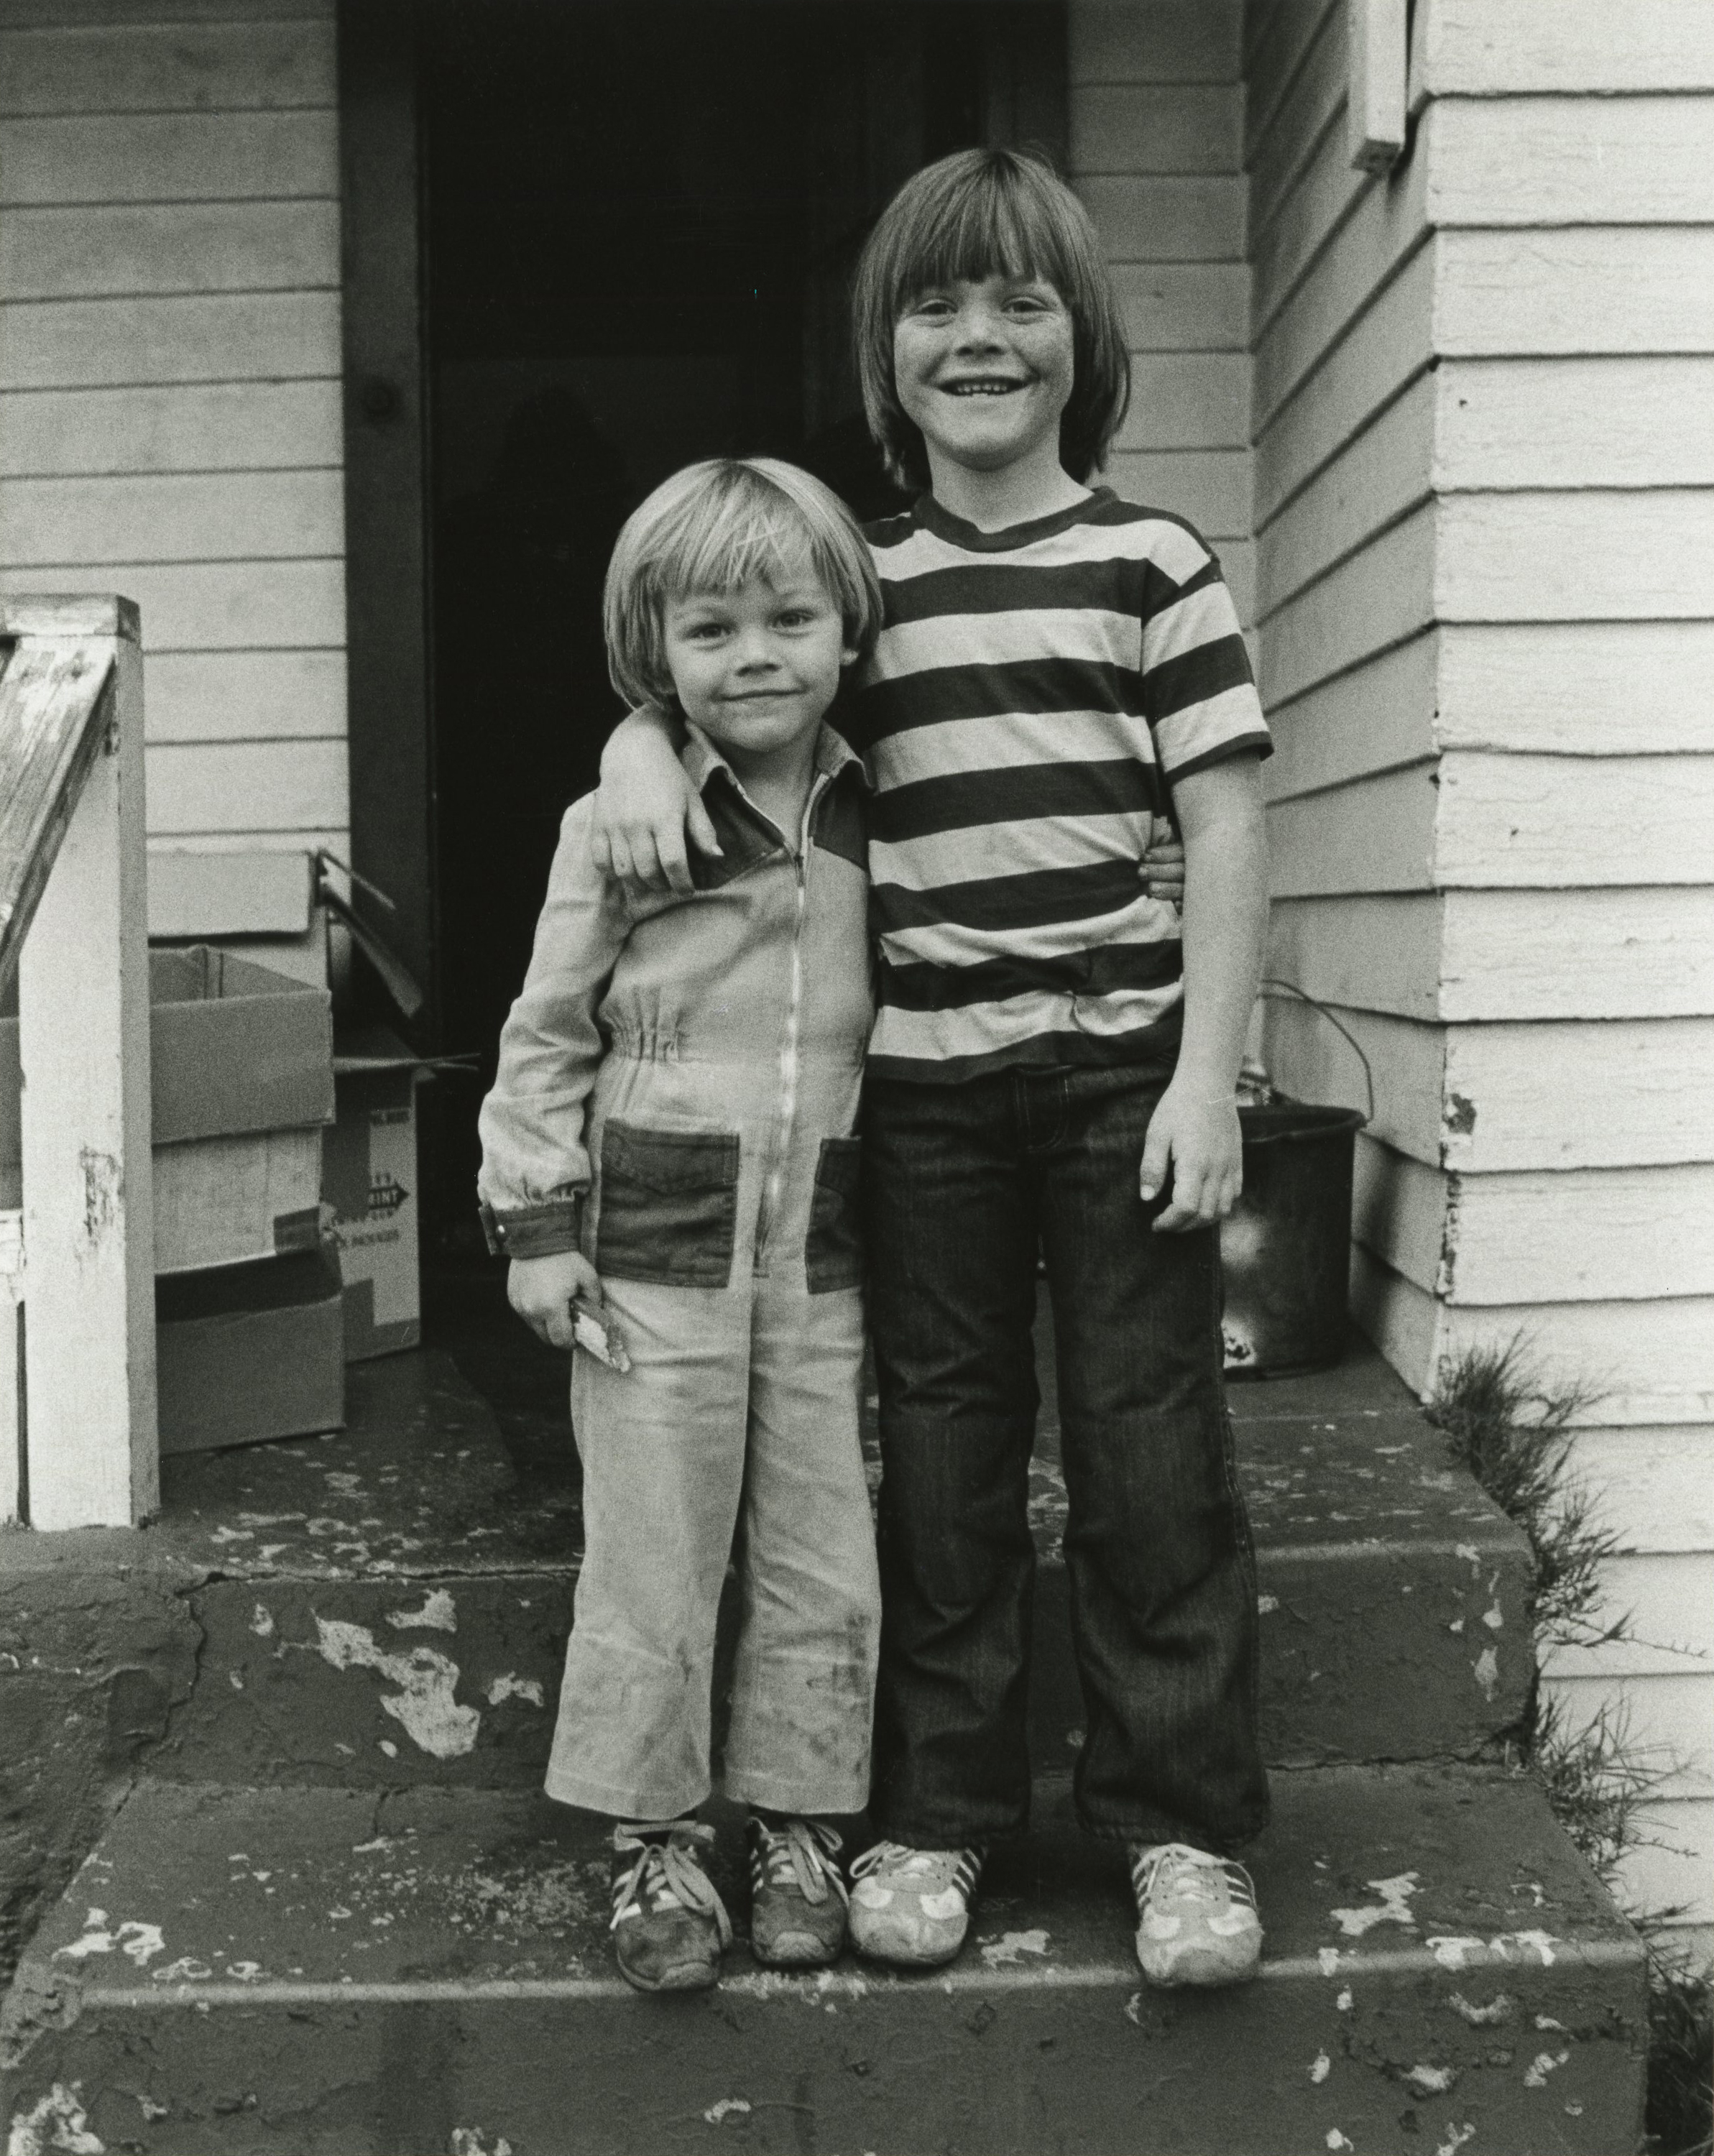 Le jeune garçon et son demi-frère posent devant leur maison en juillet 1978 à Hollywood, en Californie | Source : Getty Images